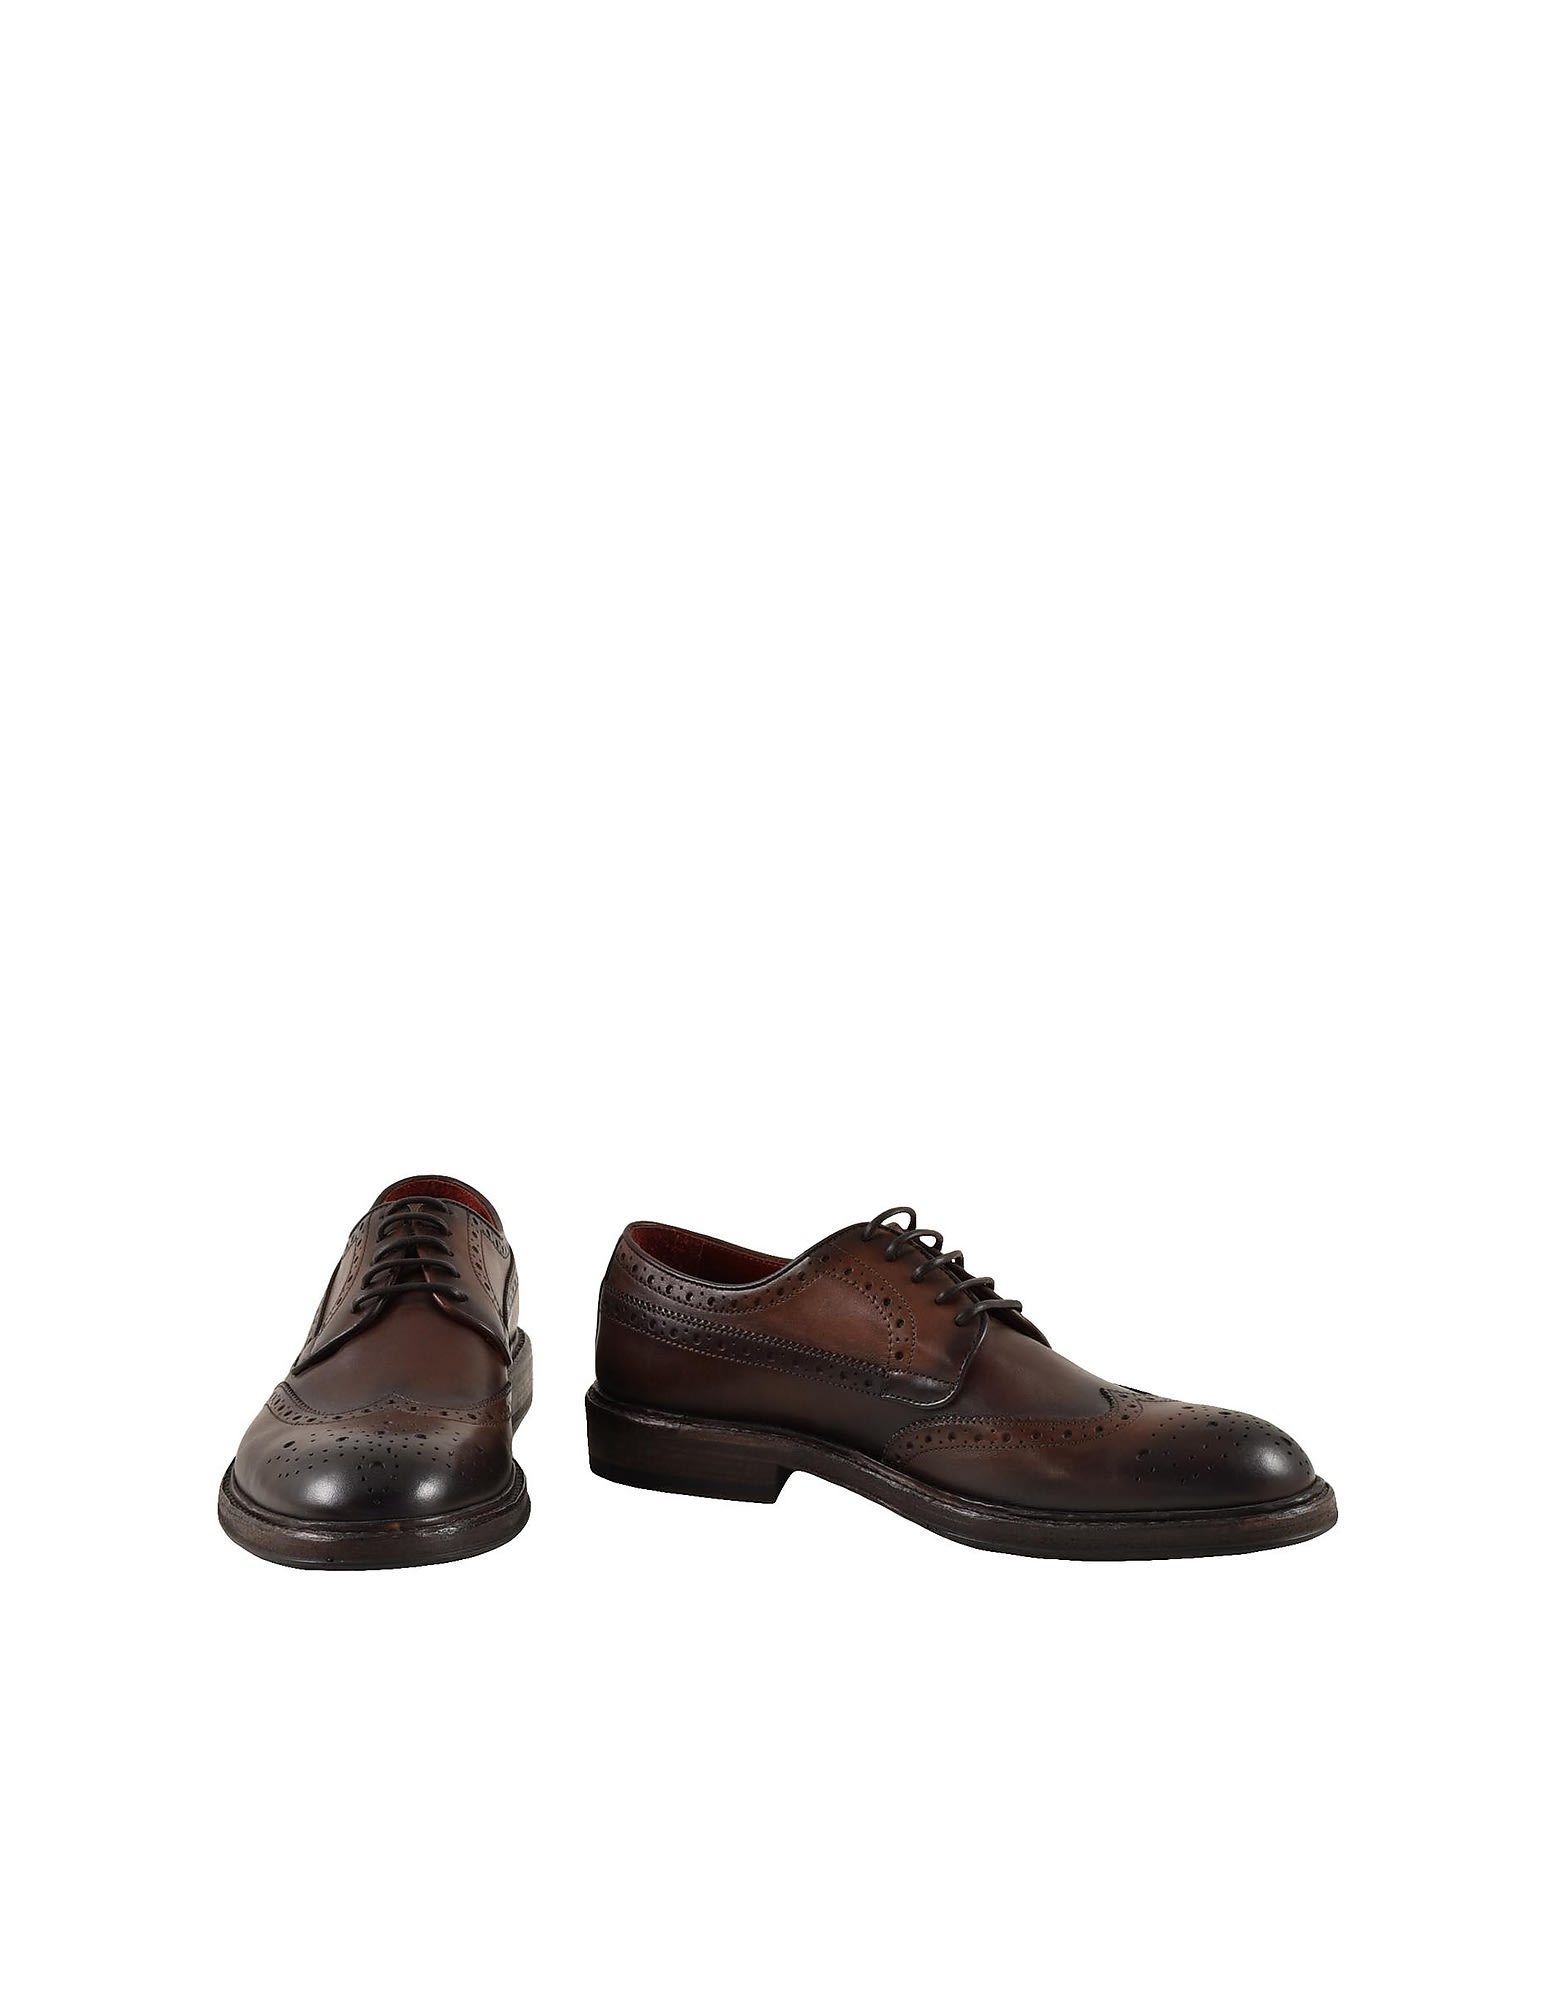 Corvari Mens Brown Shoes